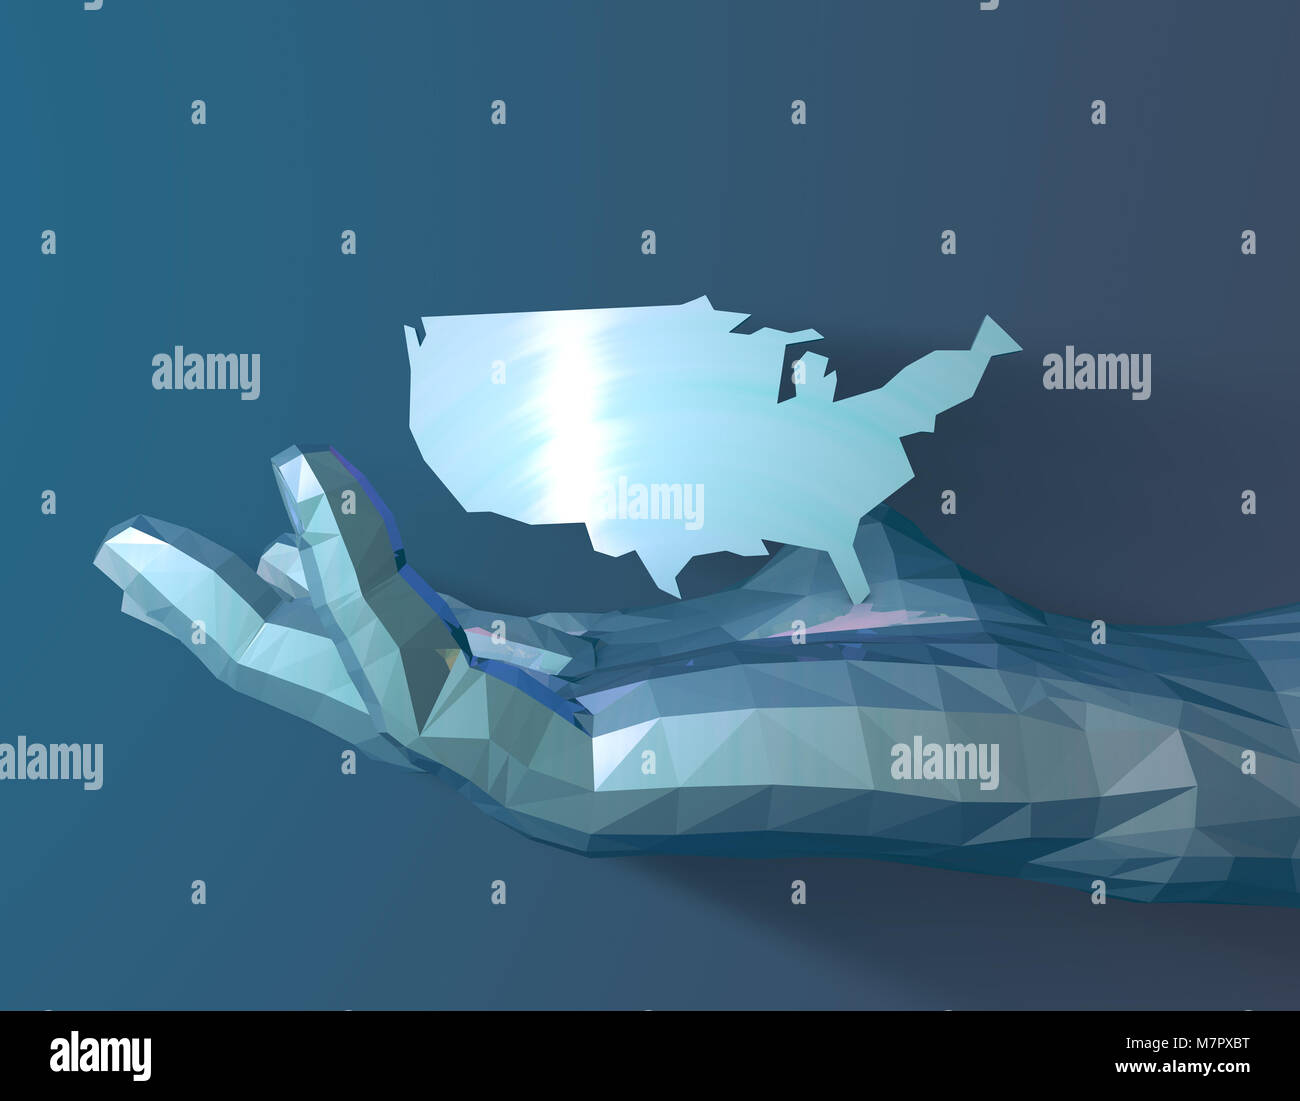 Karte der Vereinigten Staaten in die Hände der Menschen, die menschliche Technologie, die Kontrolle über die Zukunft Stockfoto